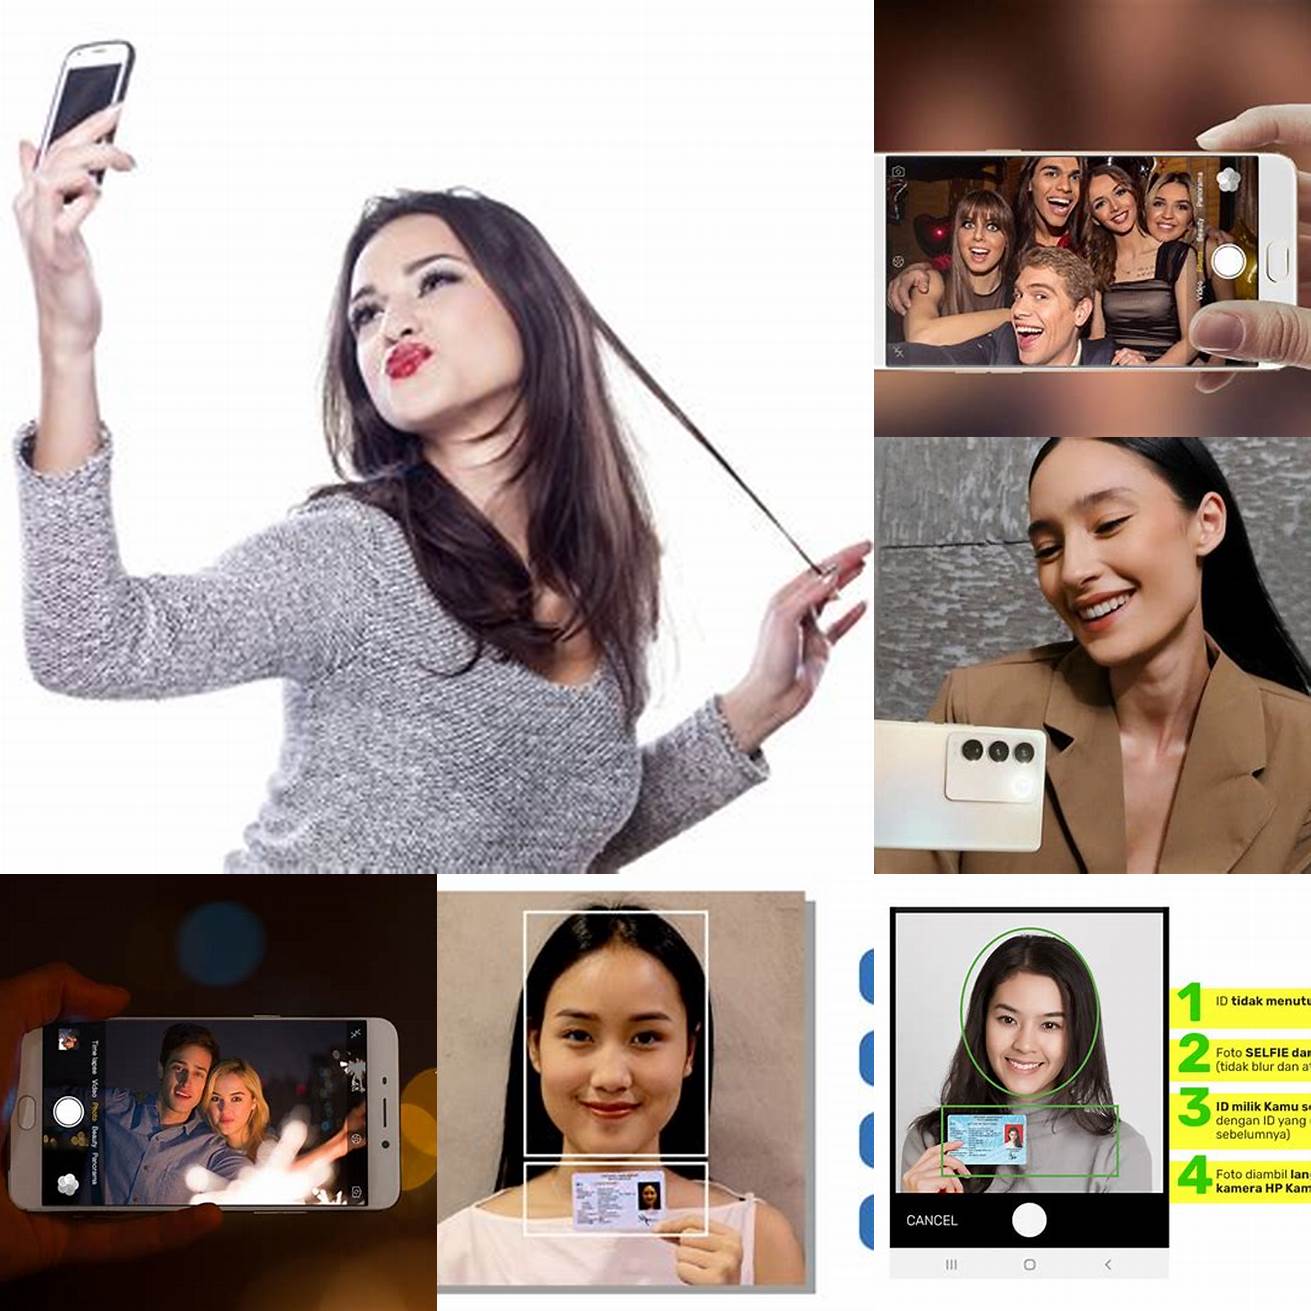 Dilengkapi dengan fitur Intruder Selfie yang bisa memfoto orang yang mencoba membuka aplikasi yang sudah dikunci